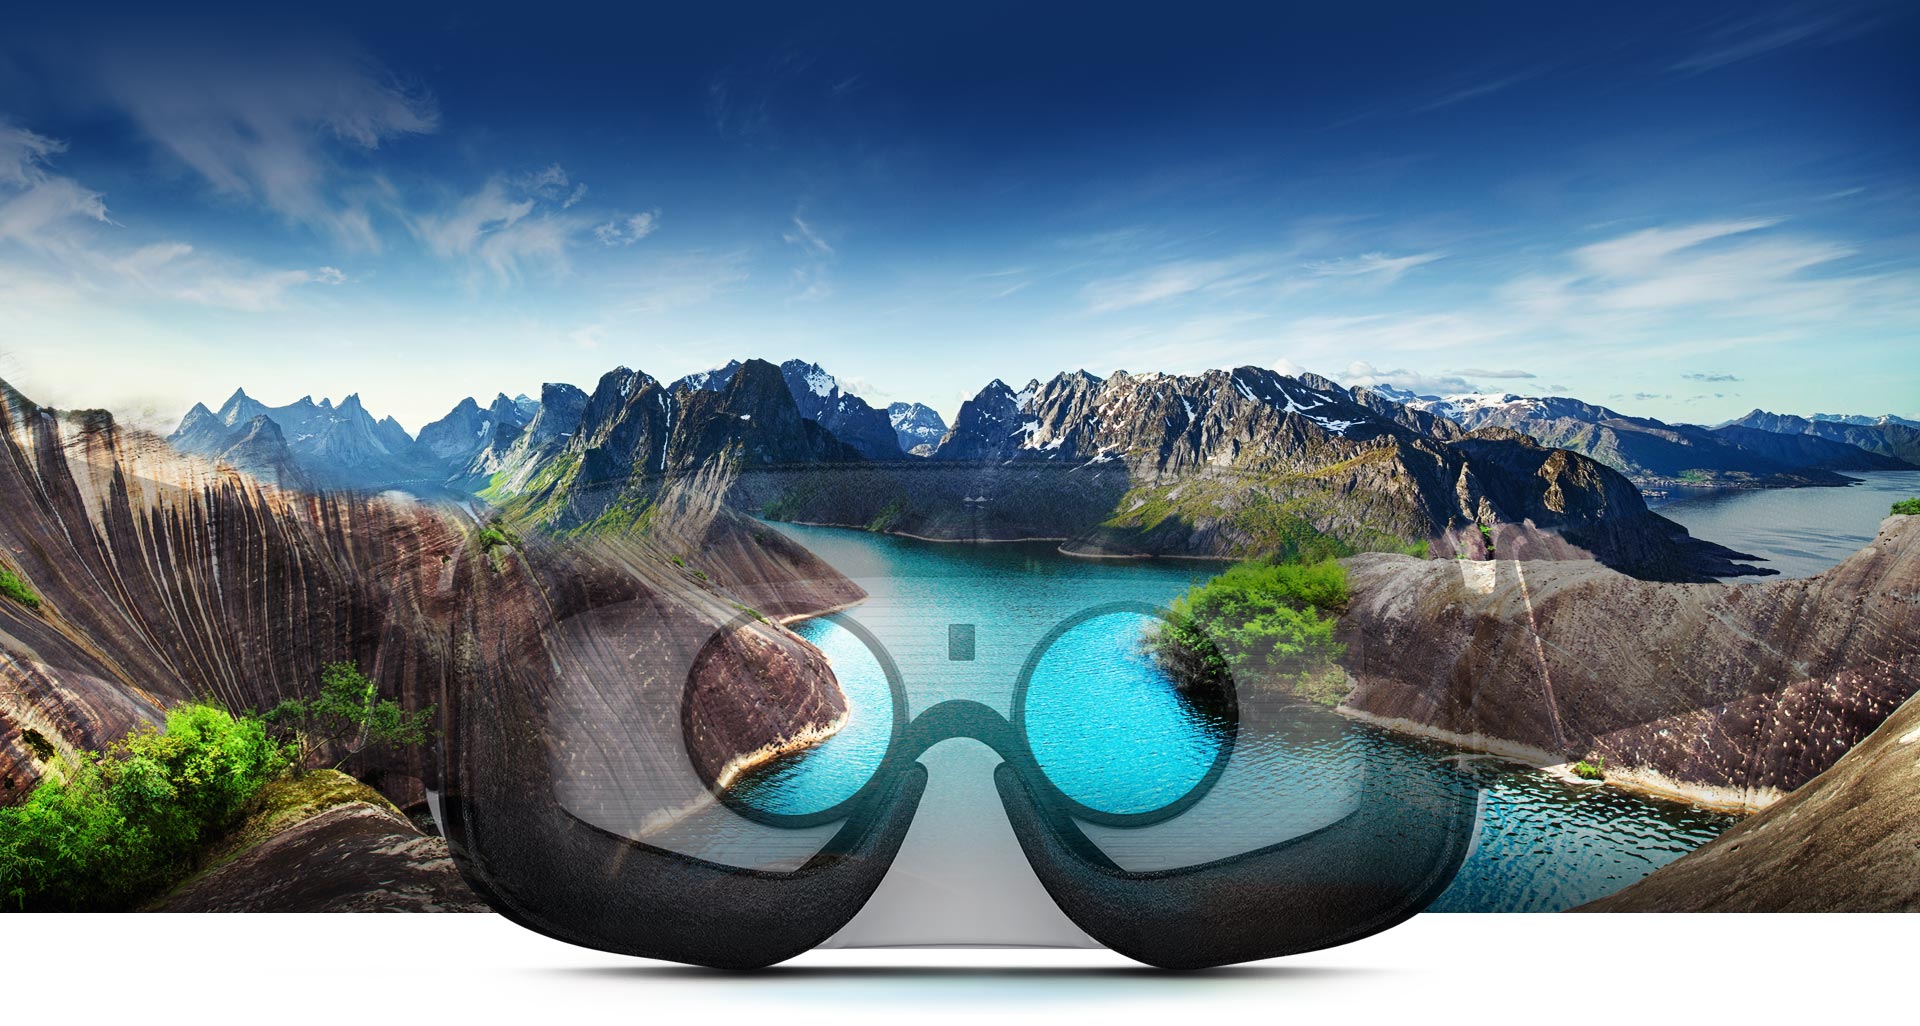 Mở khóa thế giới thực tế ảo với bộ đôi Galaxy S7 và Gear VR - Ảnh 4.